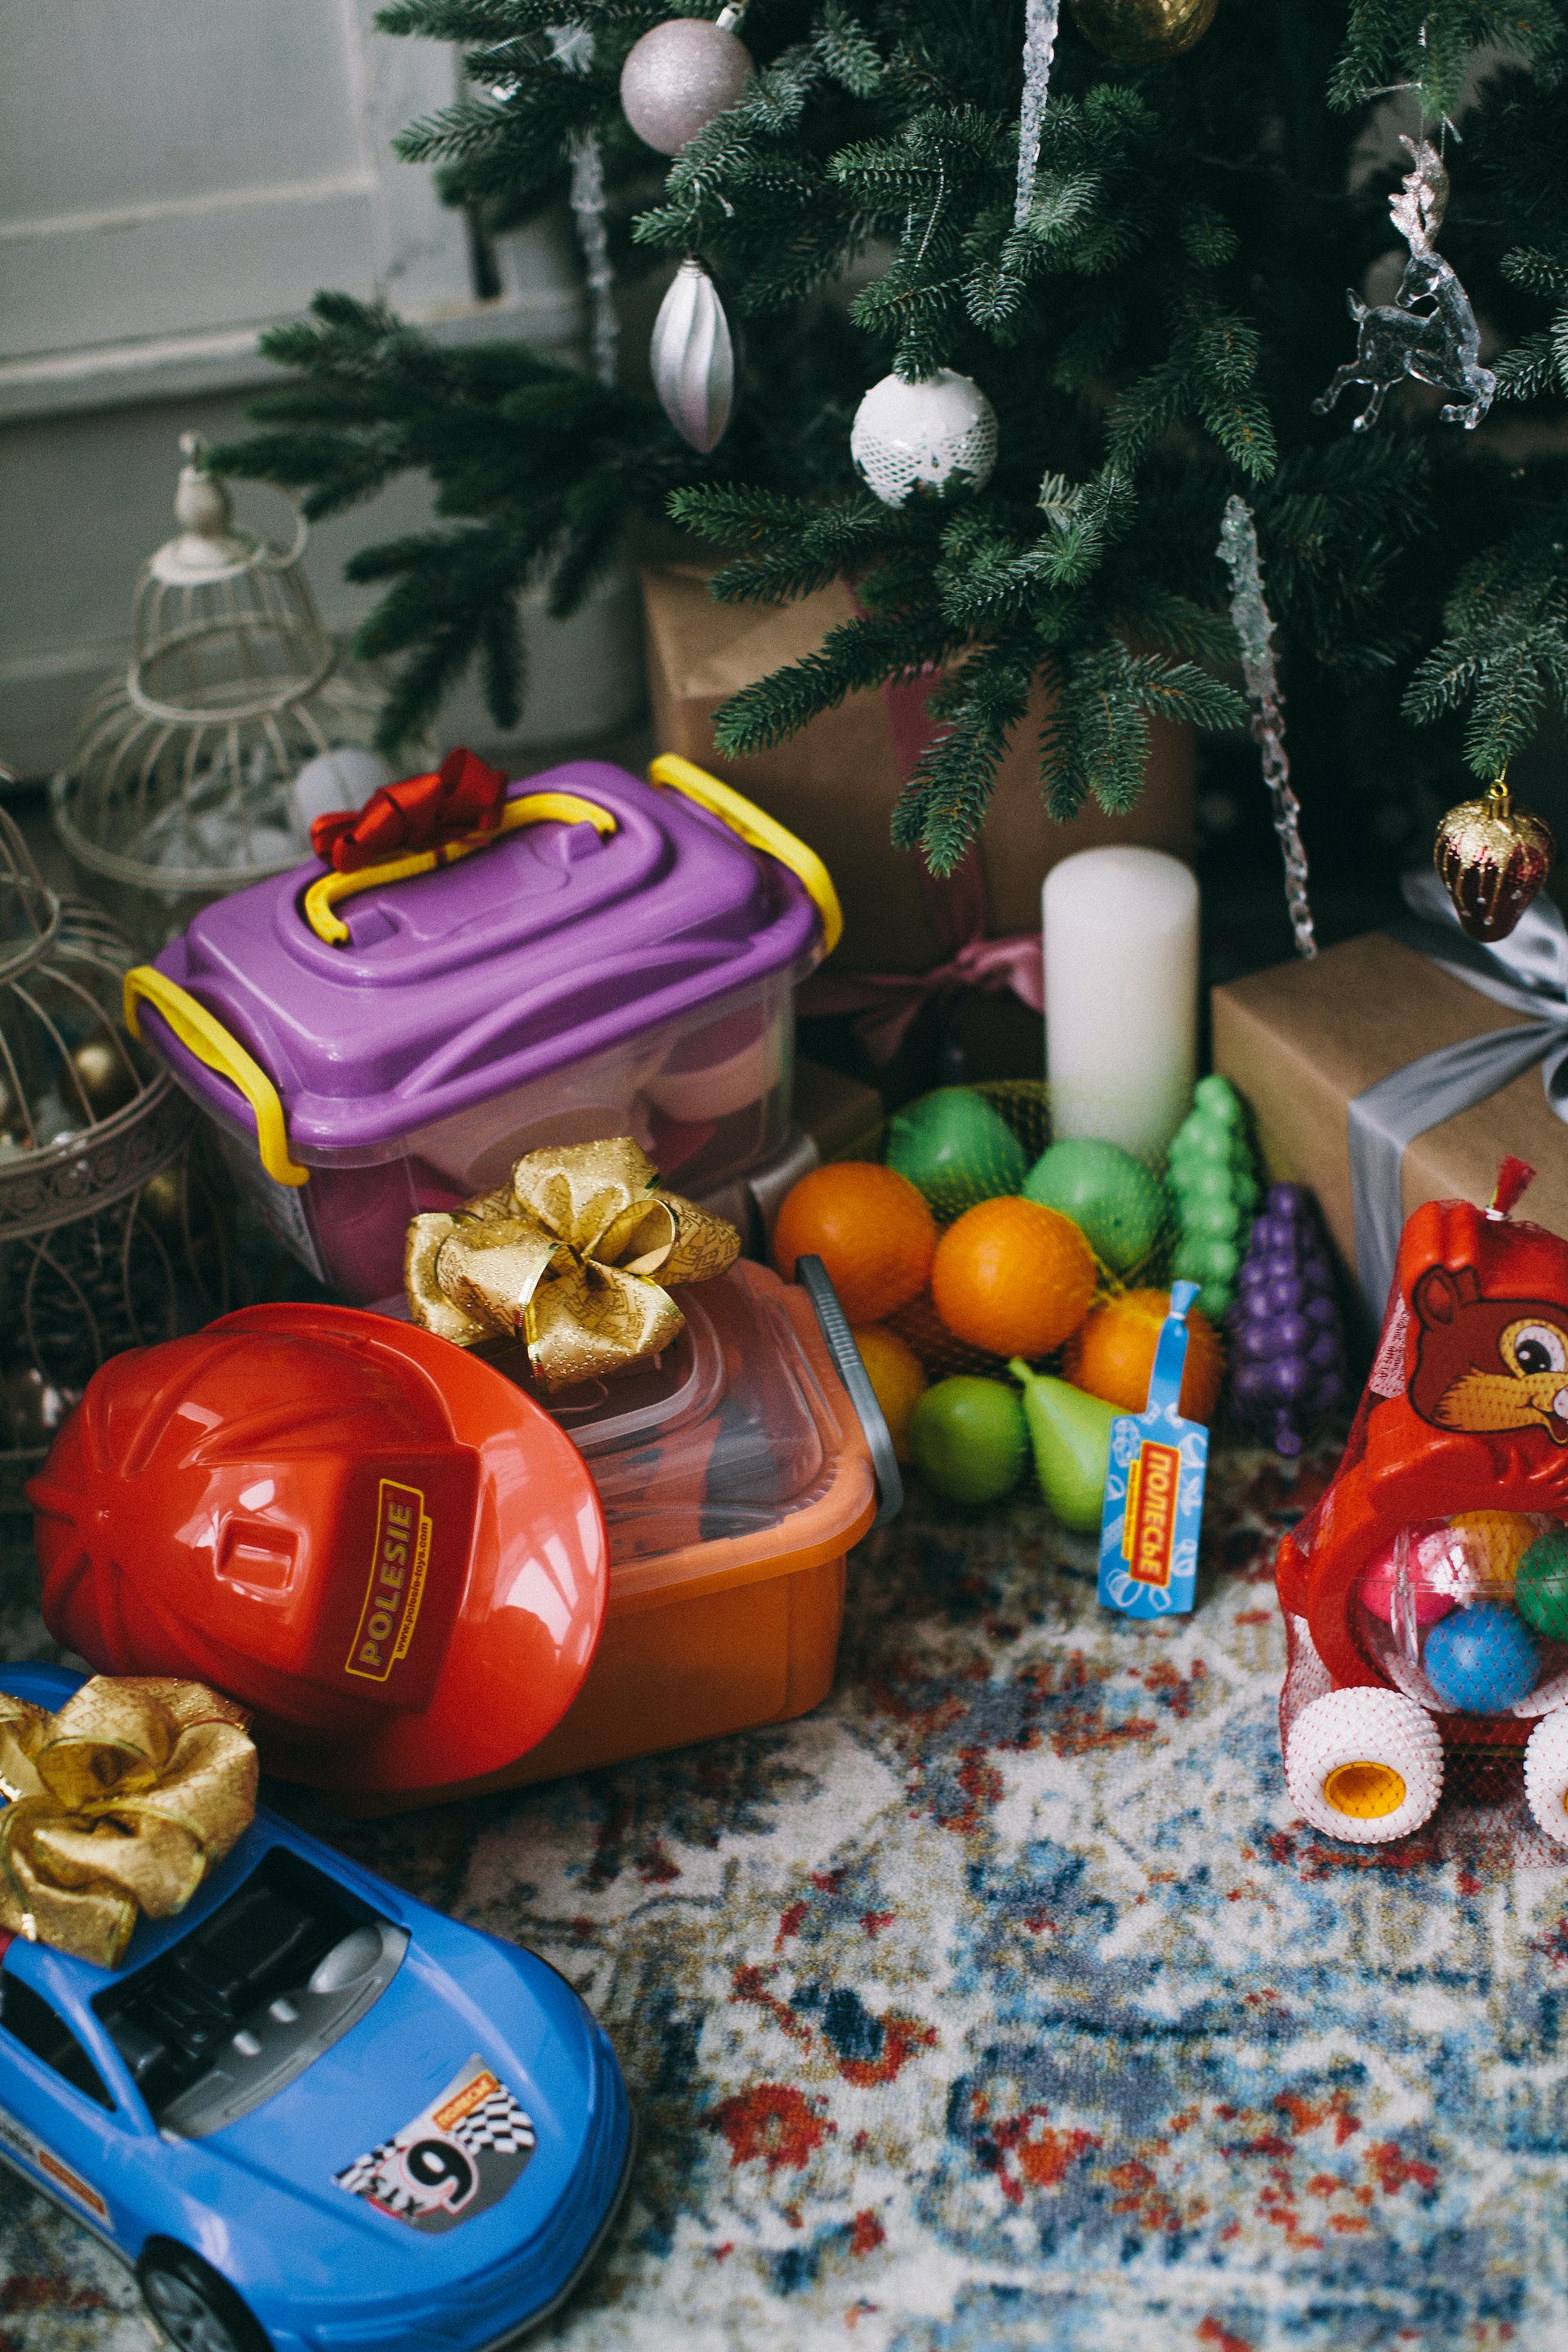 Kinderspielzeug unter einem Weihnachtsbaum | Quelle: Pexels